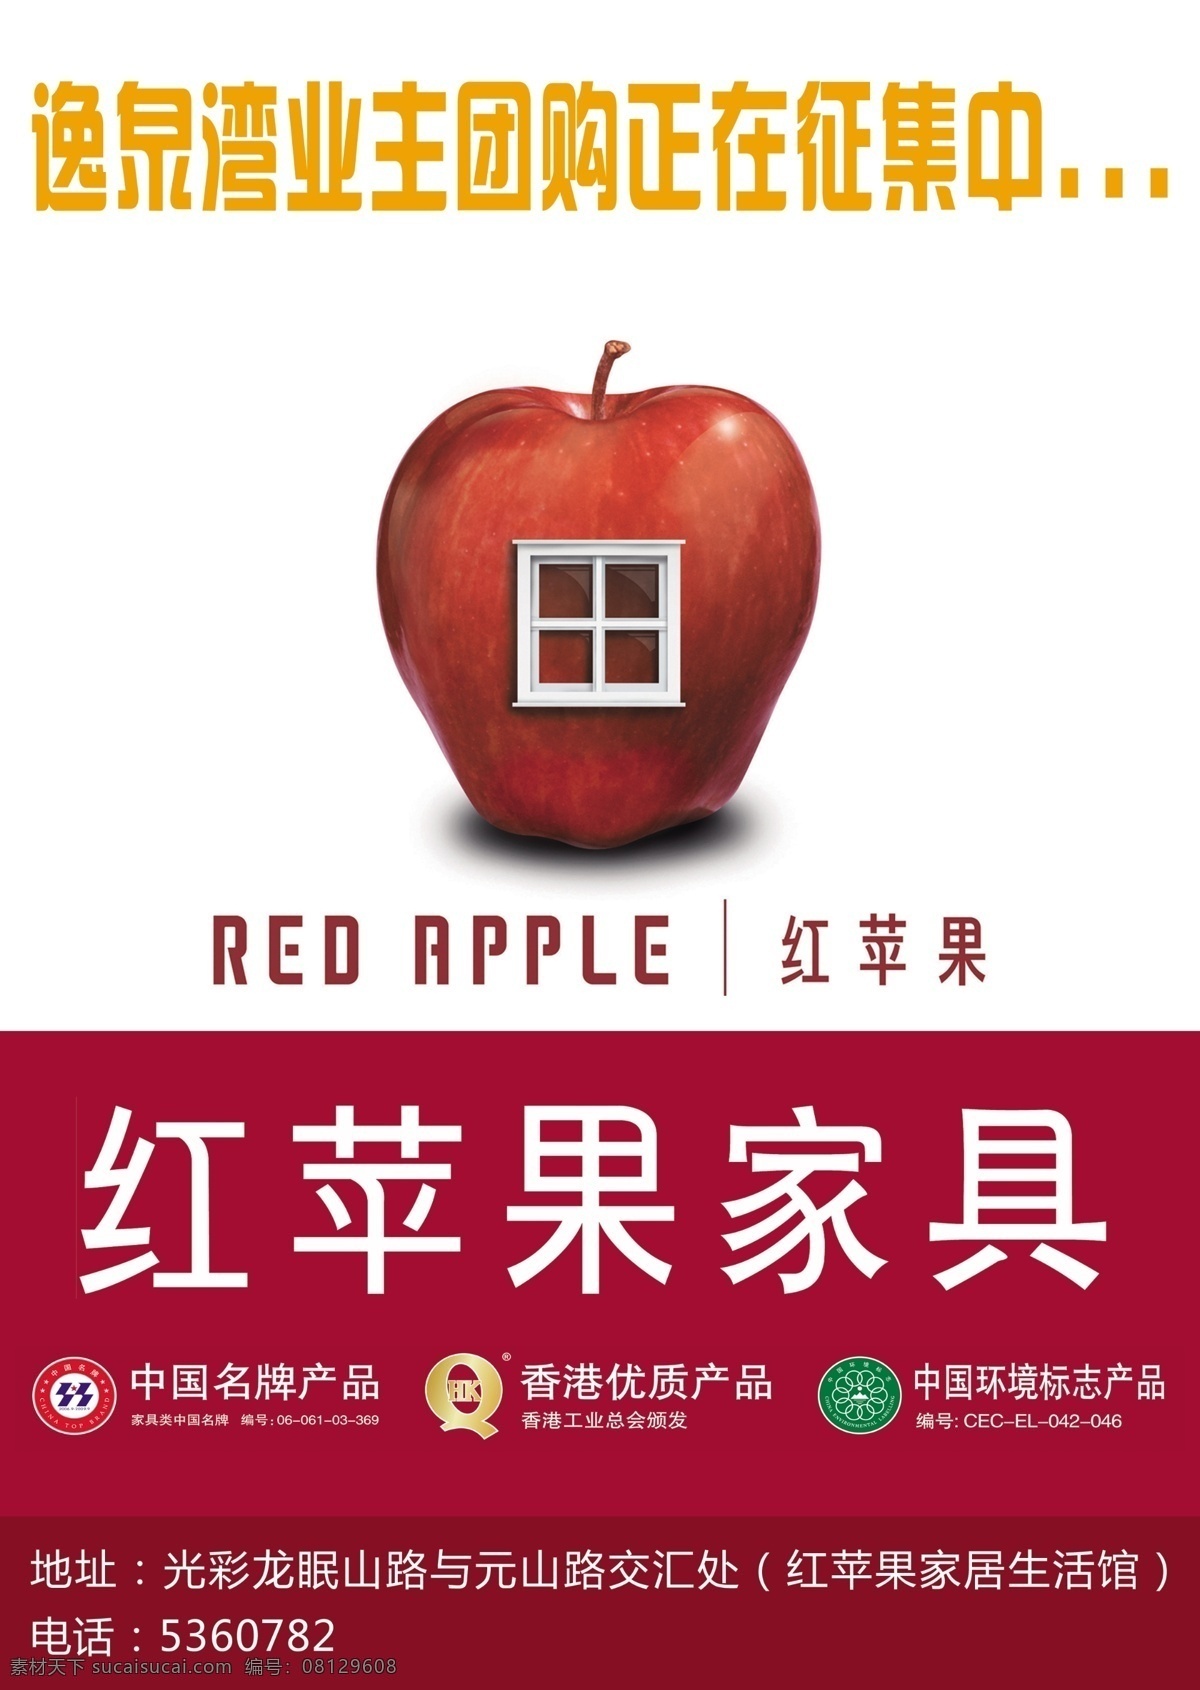 红苹果 红苹果家居 红苹果家具 家居 家具 苹果 dm 宣传单 宣传页 dm宣传单 广告设计模板 源文件